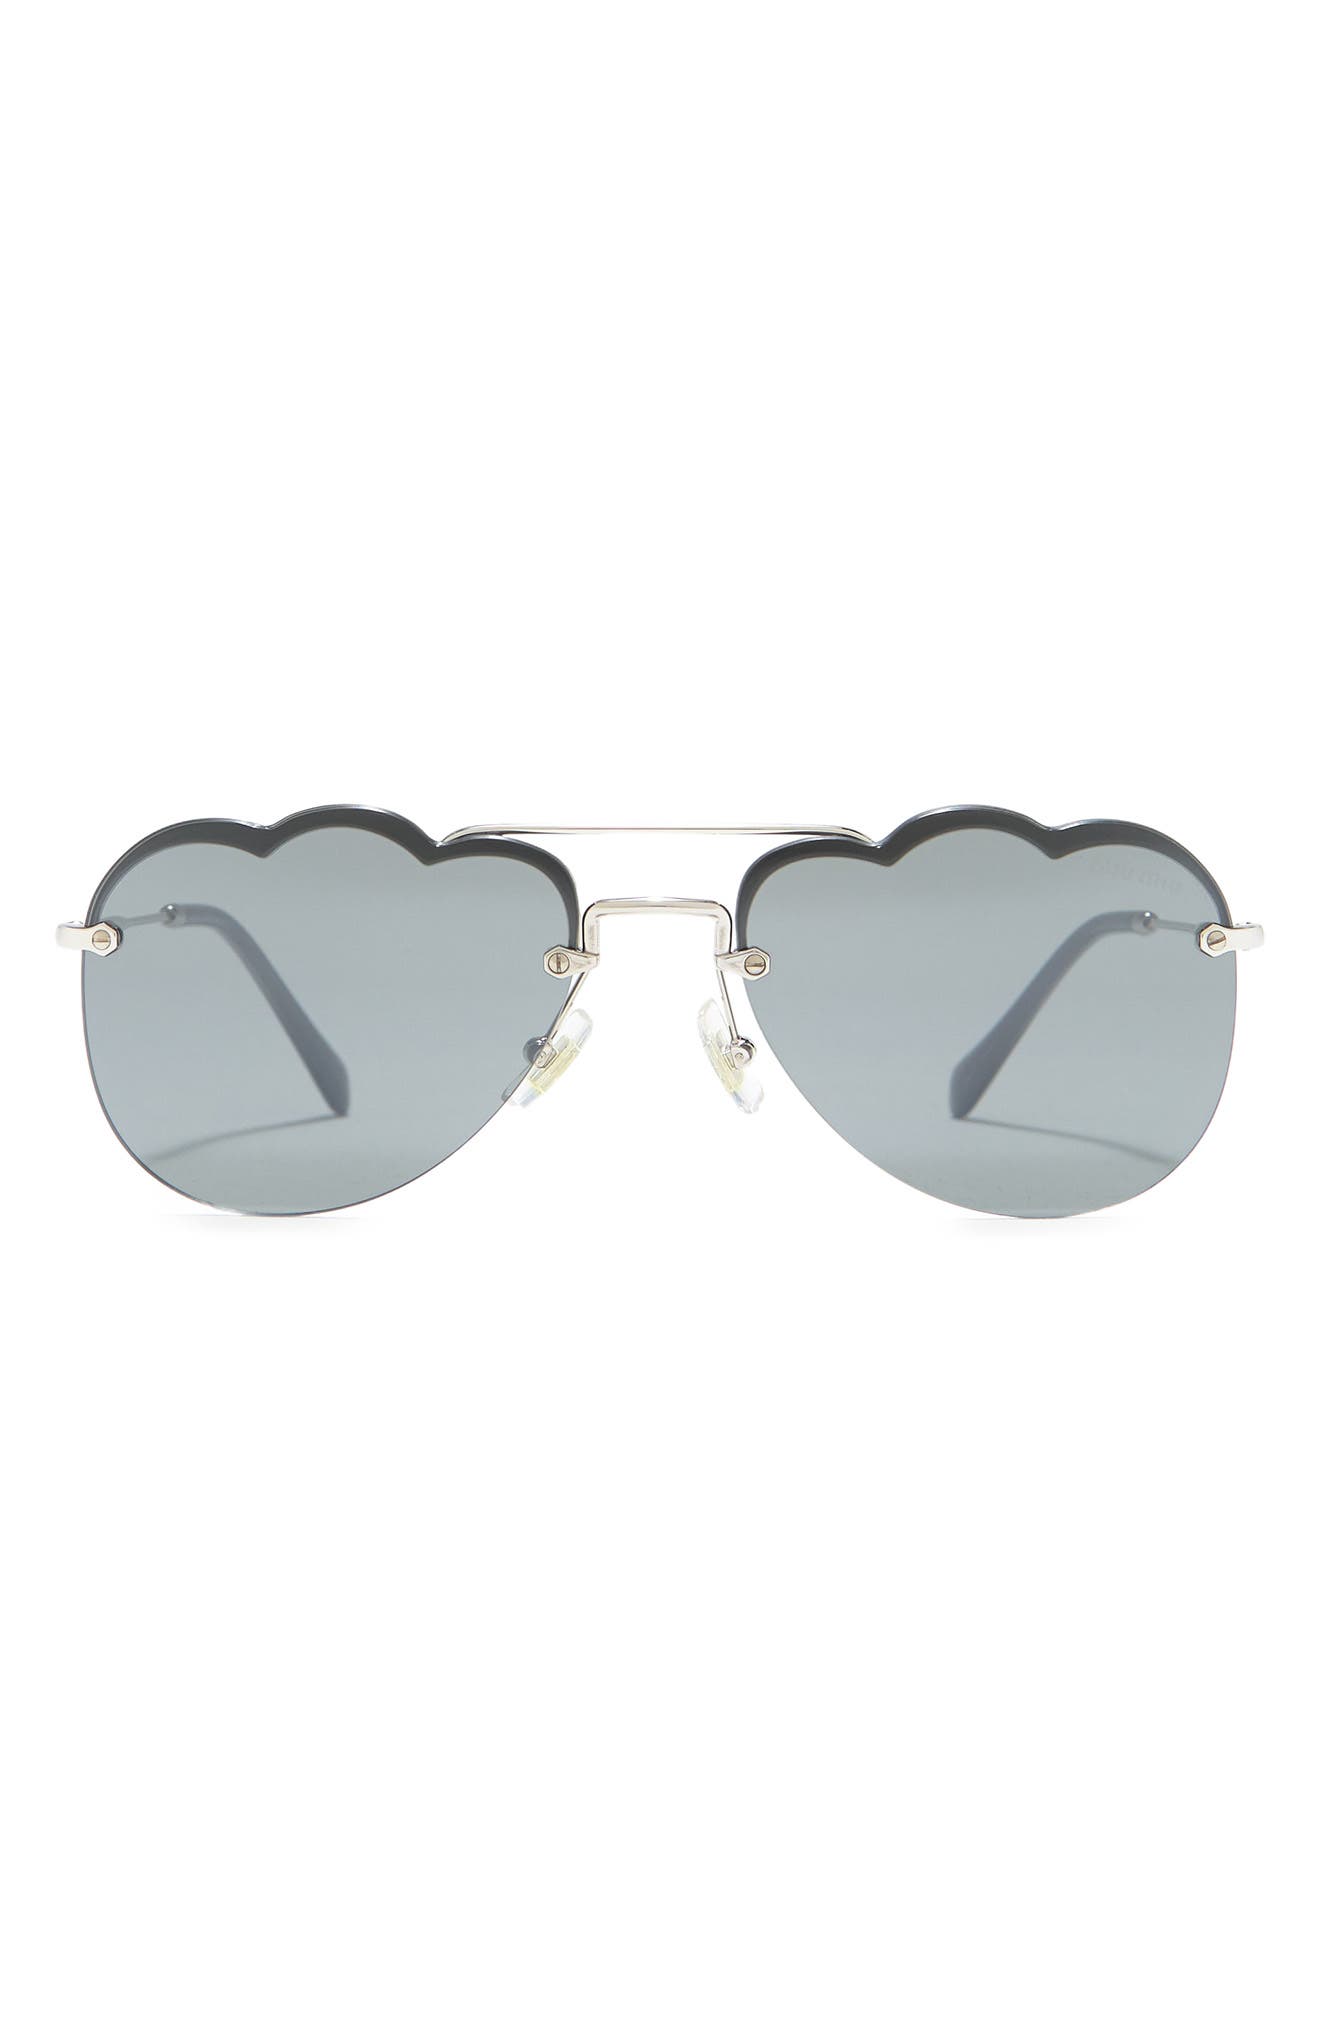 Miu Miu Aviator Glasses silver-colored-blue casual look Accessories Sunglasses Aviator Glasses 